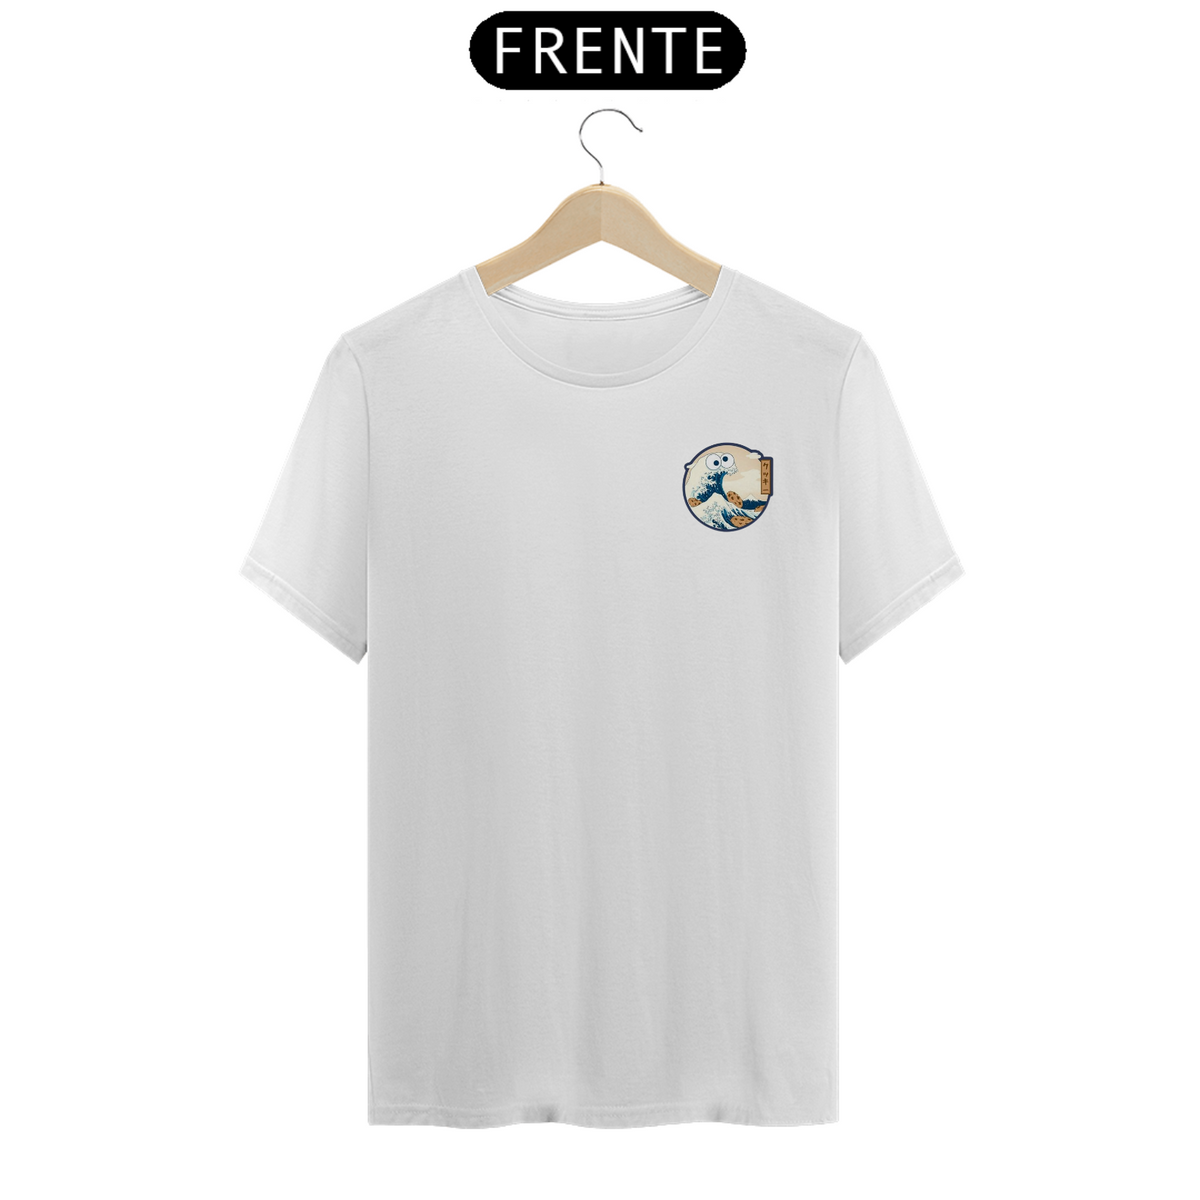 Nome do produto: Camiseta Come Fuji T-Shirt Classic